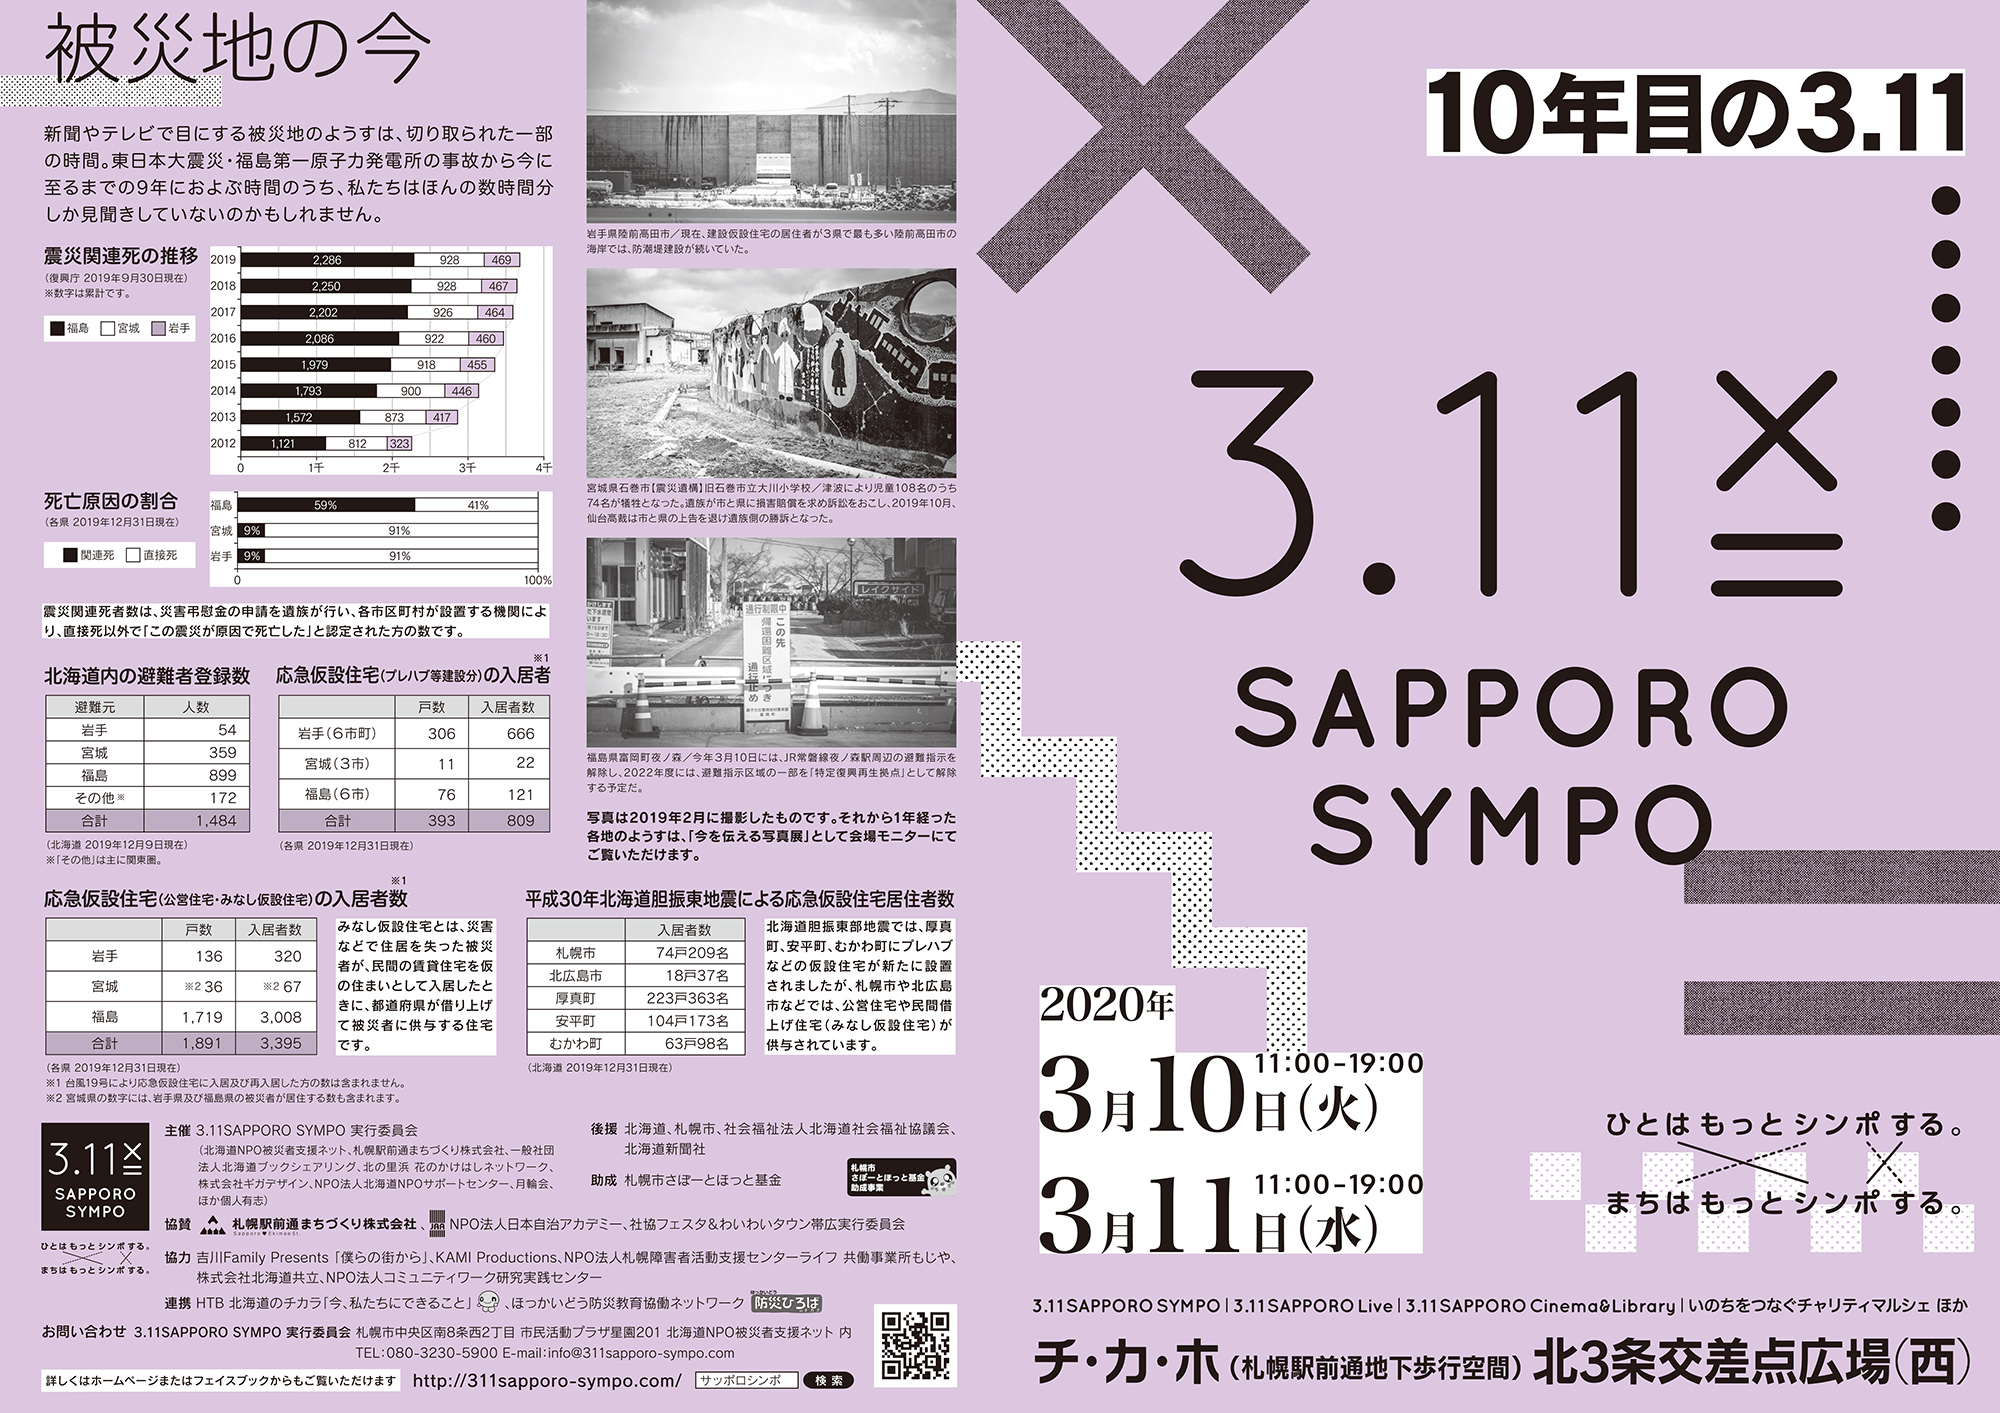 3.11 Sapporo Sympo「10年目の3.11」